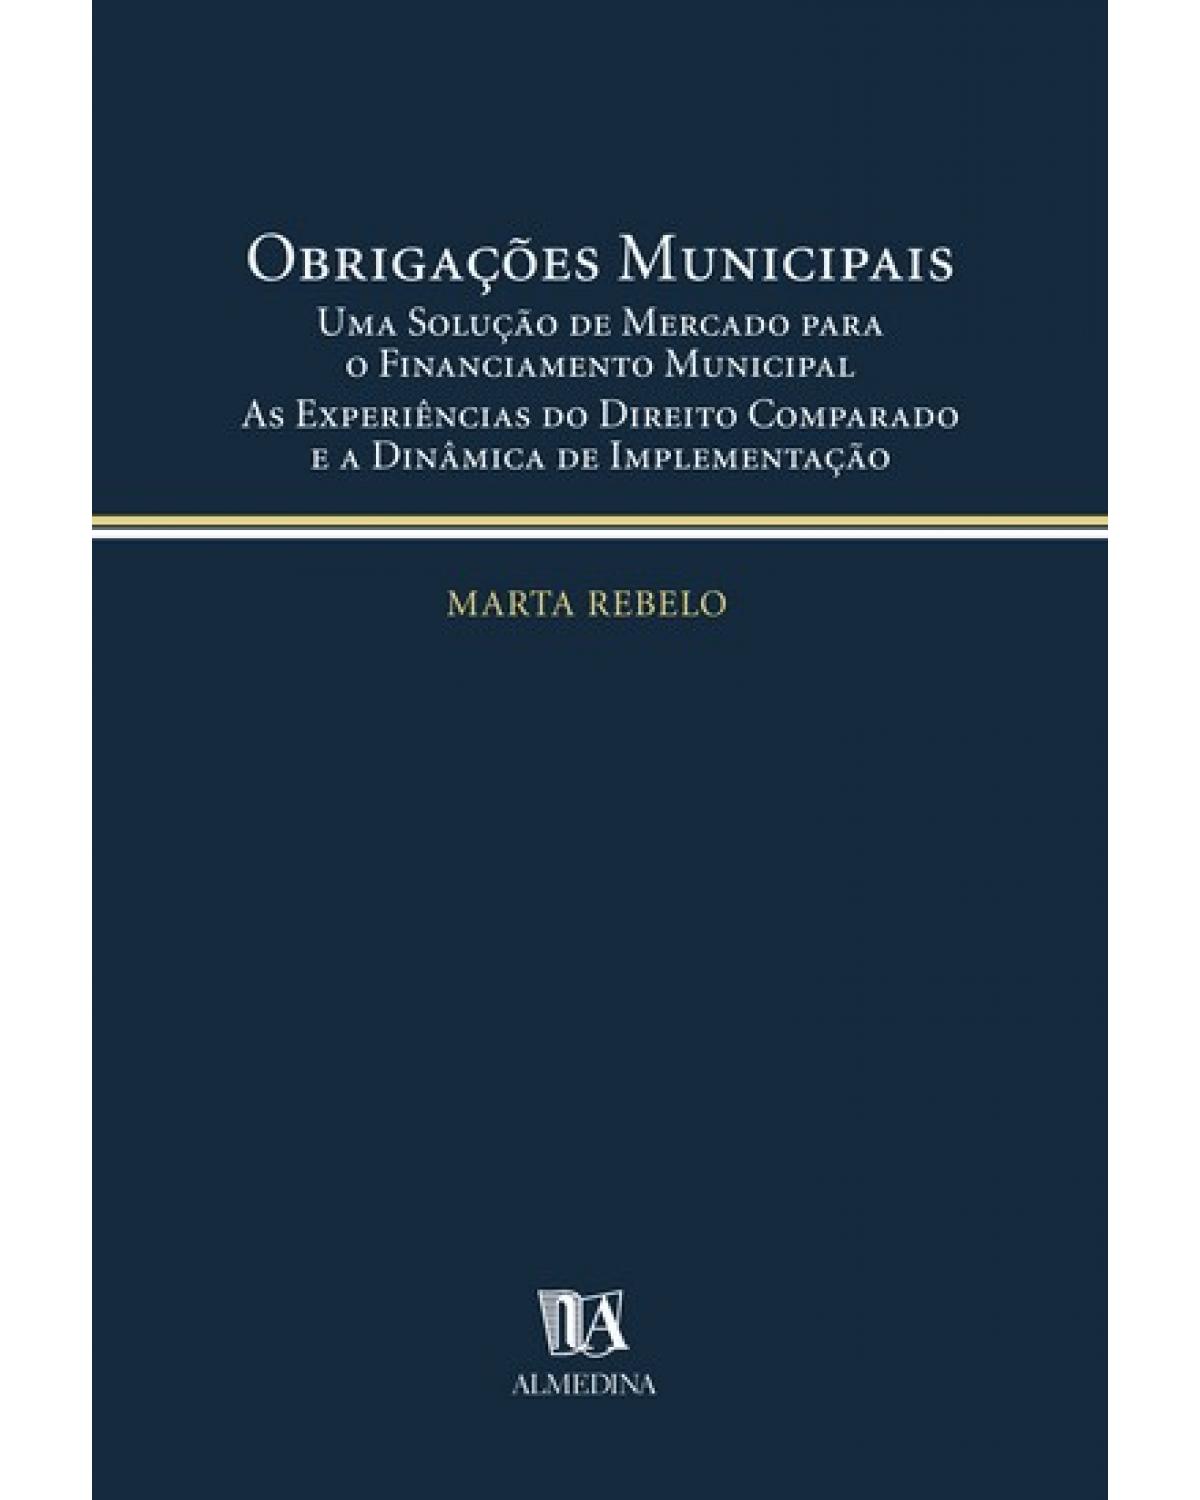 Obrigações municipais - uma solução de mercado para o financiamento municipal - As experiências do direito comparado e a dinâmica de implementação - 1ª Edição | 2004